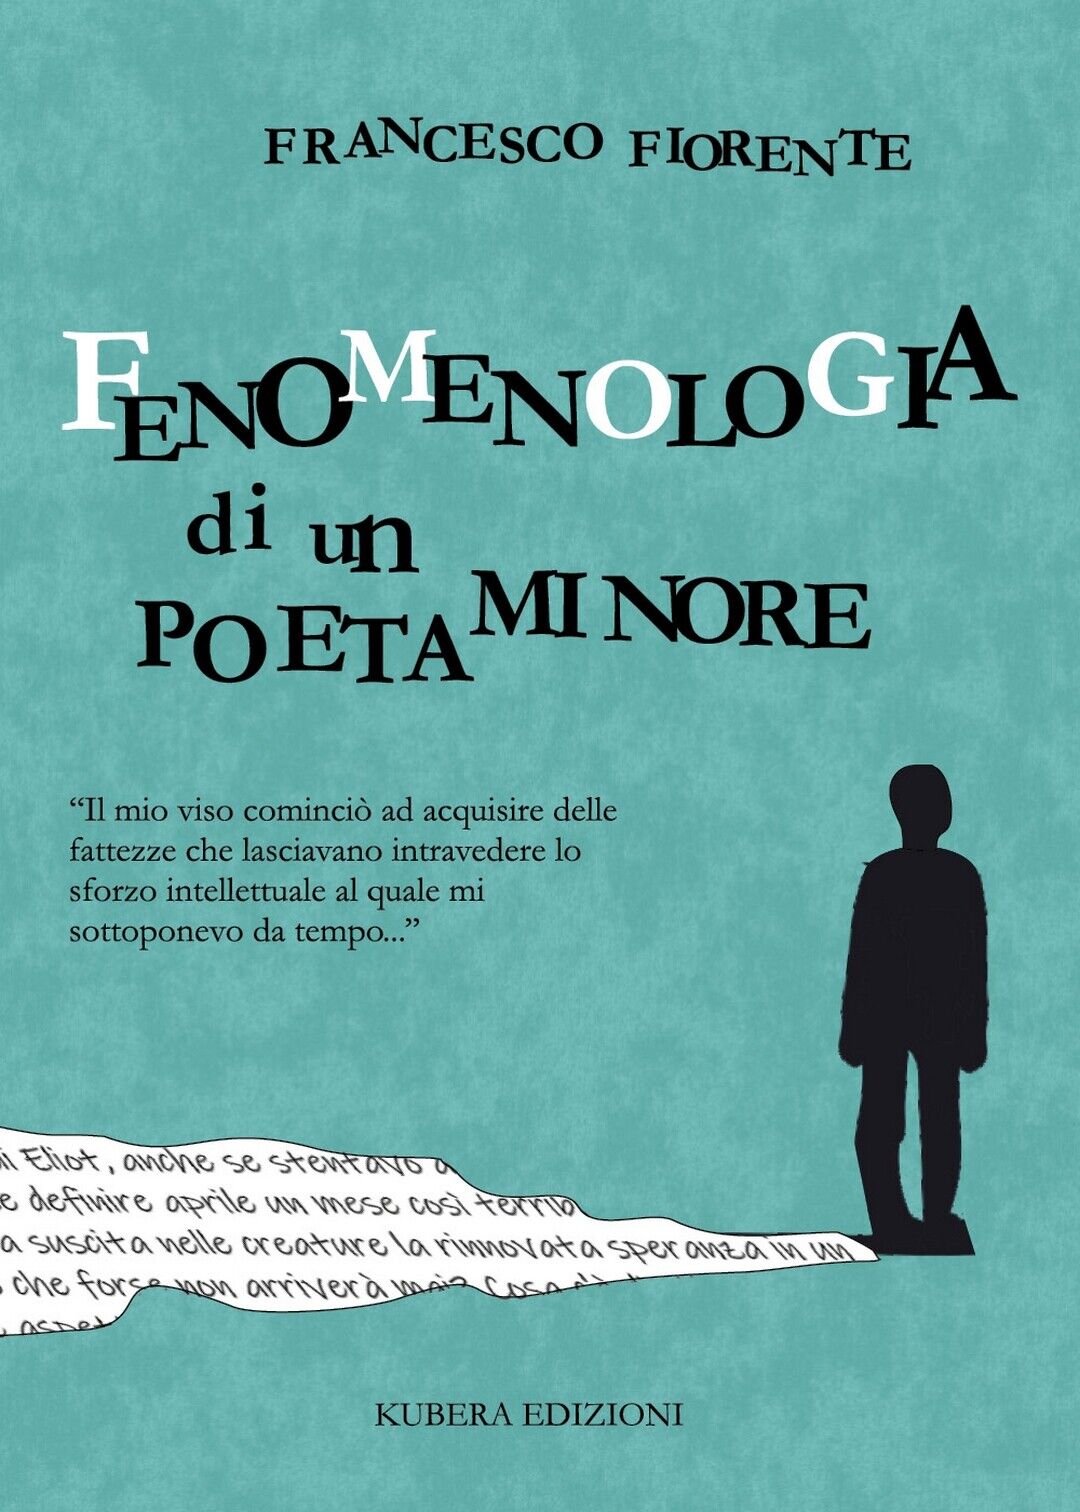 Fenomenologia di un poeta minore  di Francesco Fiorente,  2020,  Kubera Edizioni